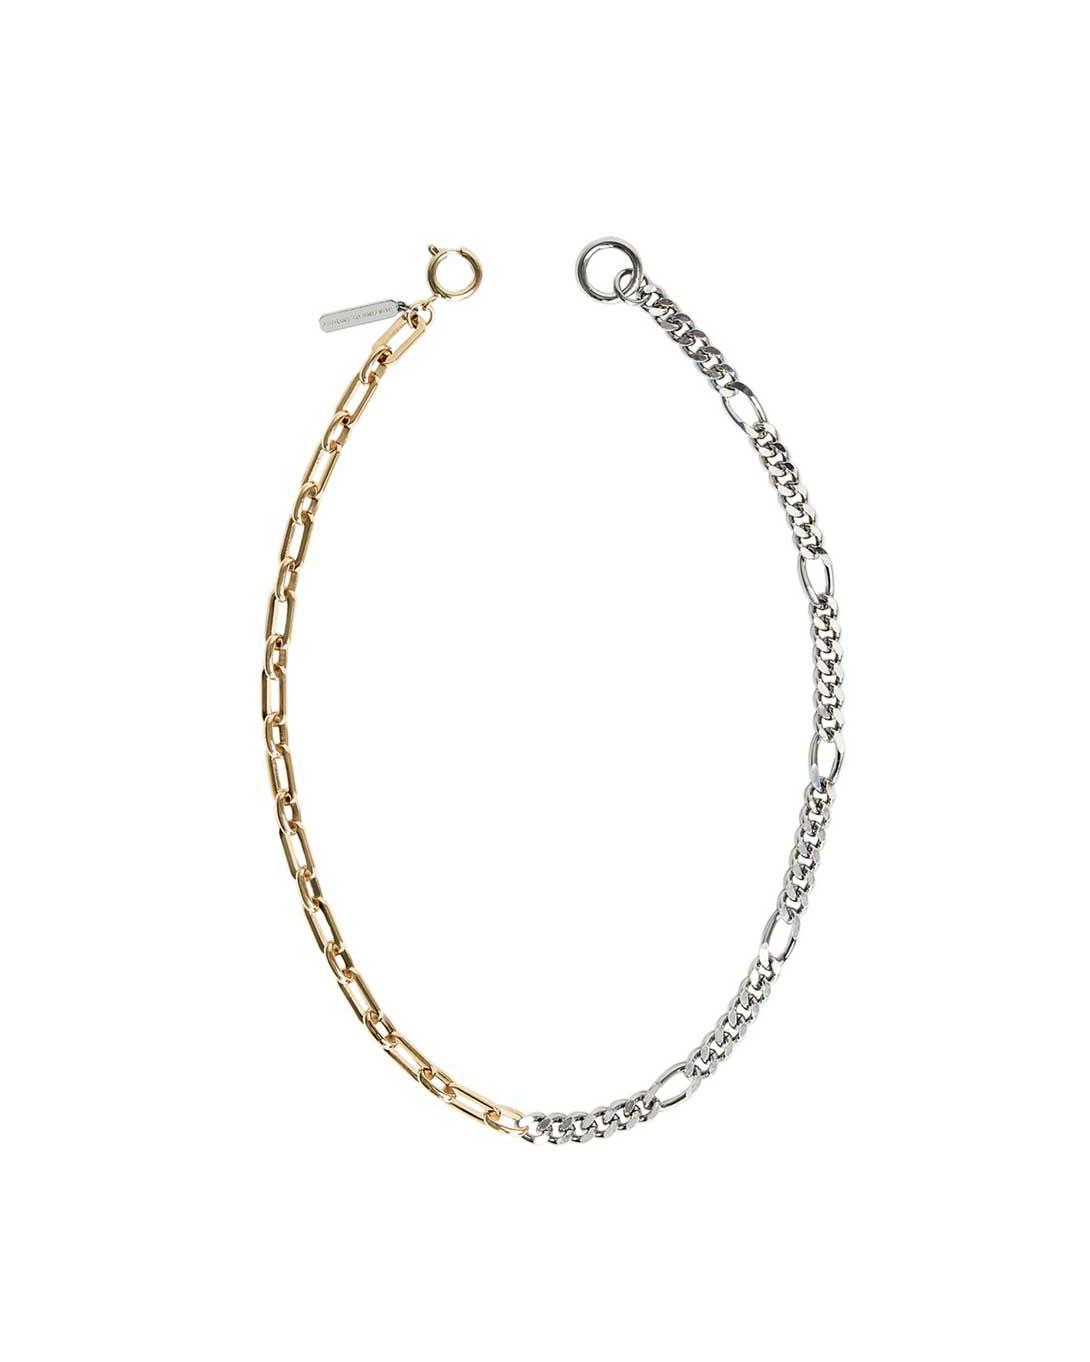 Vesper Necklace - Jewelry - Justine Clenquet - Elevastor